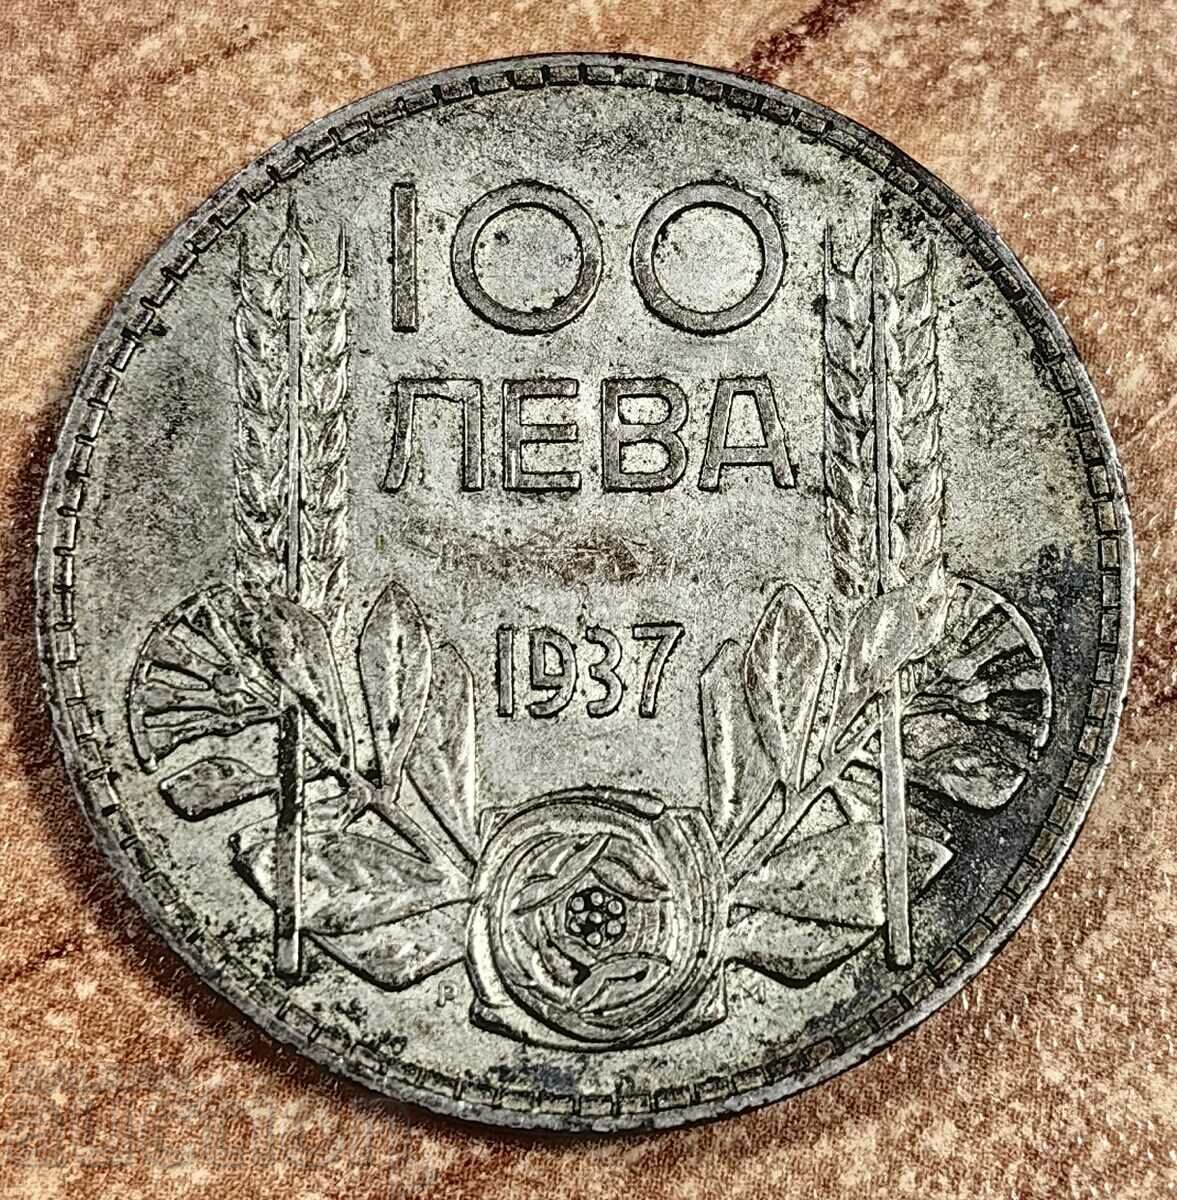 1937 100 LEVA SILVER COIN BULGARIA SILVER